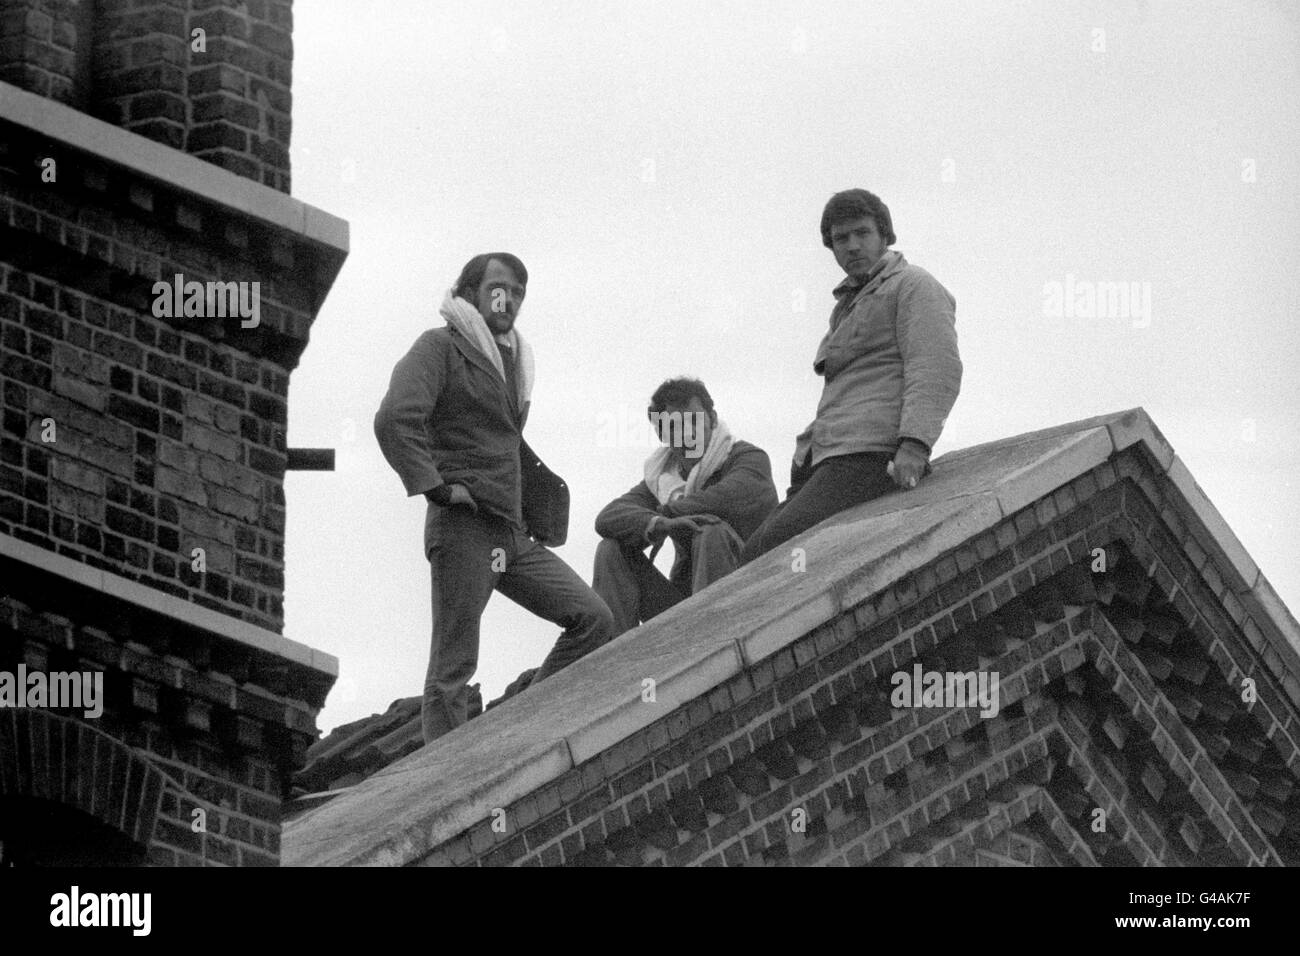 Drei Gefangene, Robert Walsh, Stephen Blake und Martin Coughlan, stehen auf dem Dach des D-Blocks im Wormwood Scrubs Prison, London, während eines Protestes der drei Insassen. Sie beworfen Gefängnisbeamte mit Schiefer vom Dach und winkte die irische tricolor Flagge, forderte "mehr humane Gefängnisbesuche". Stockfoto